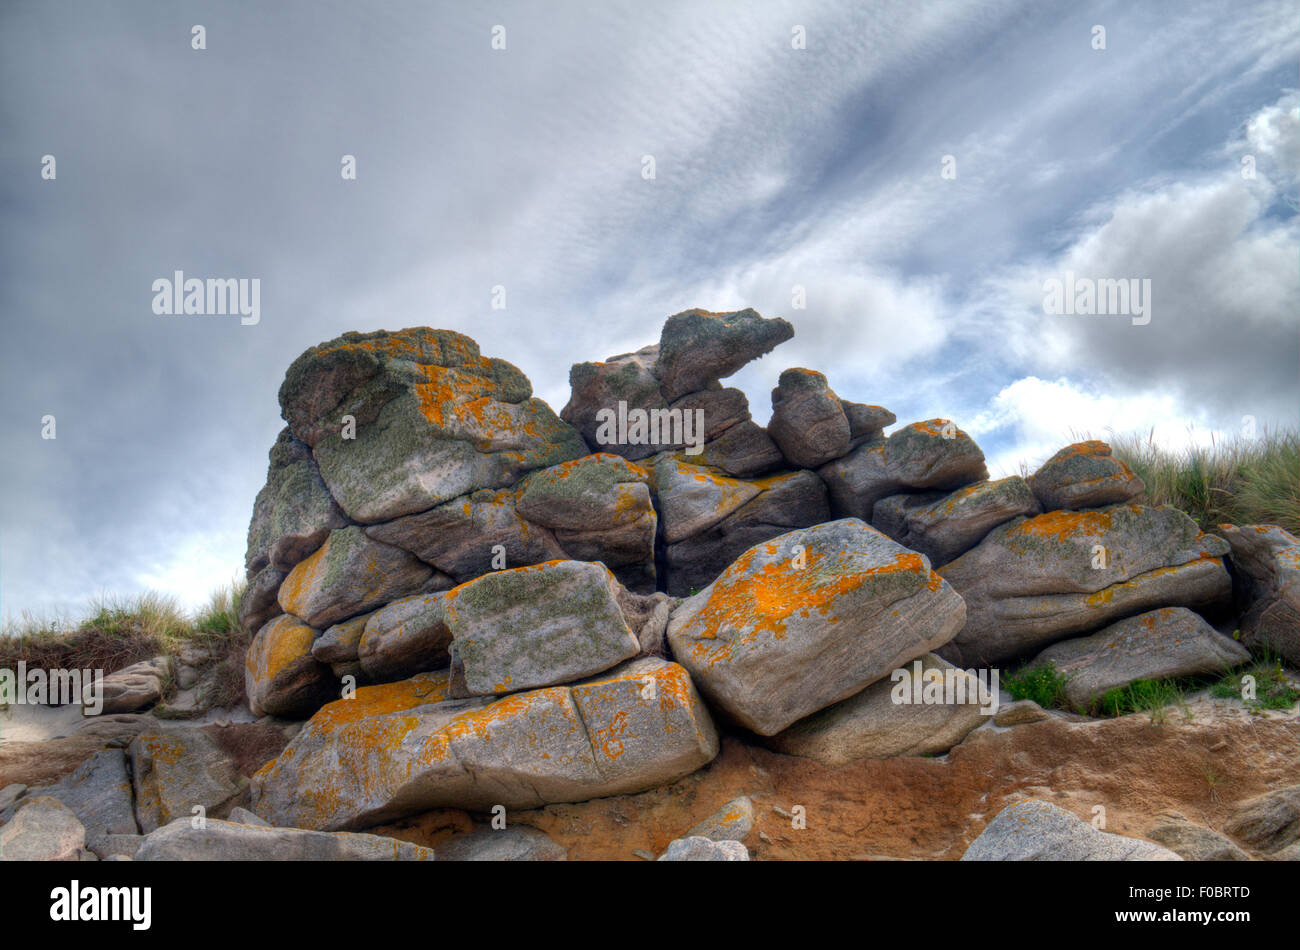 Erodierte Granit, ein Tor, auch bekannt als Schloss Koppie oder Kopje, an der Küste der Bretagne, Frankreich Stockfoto